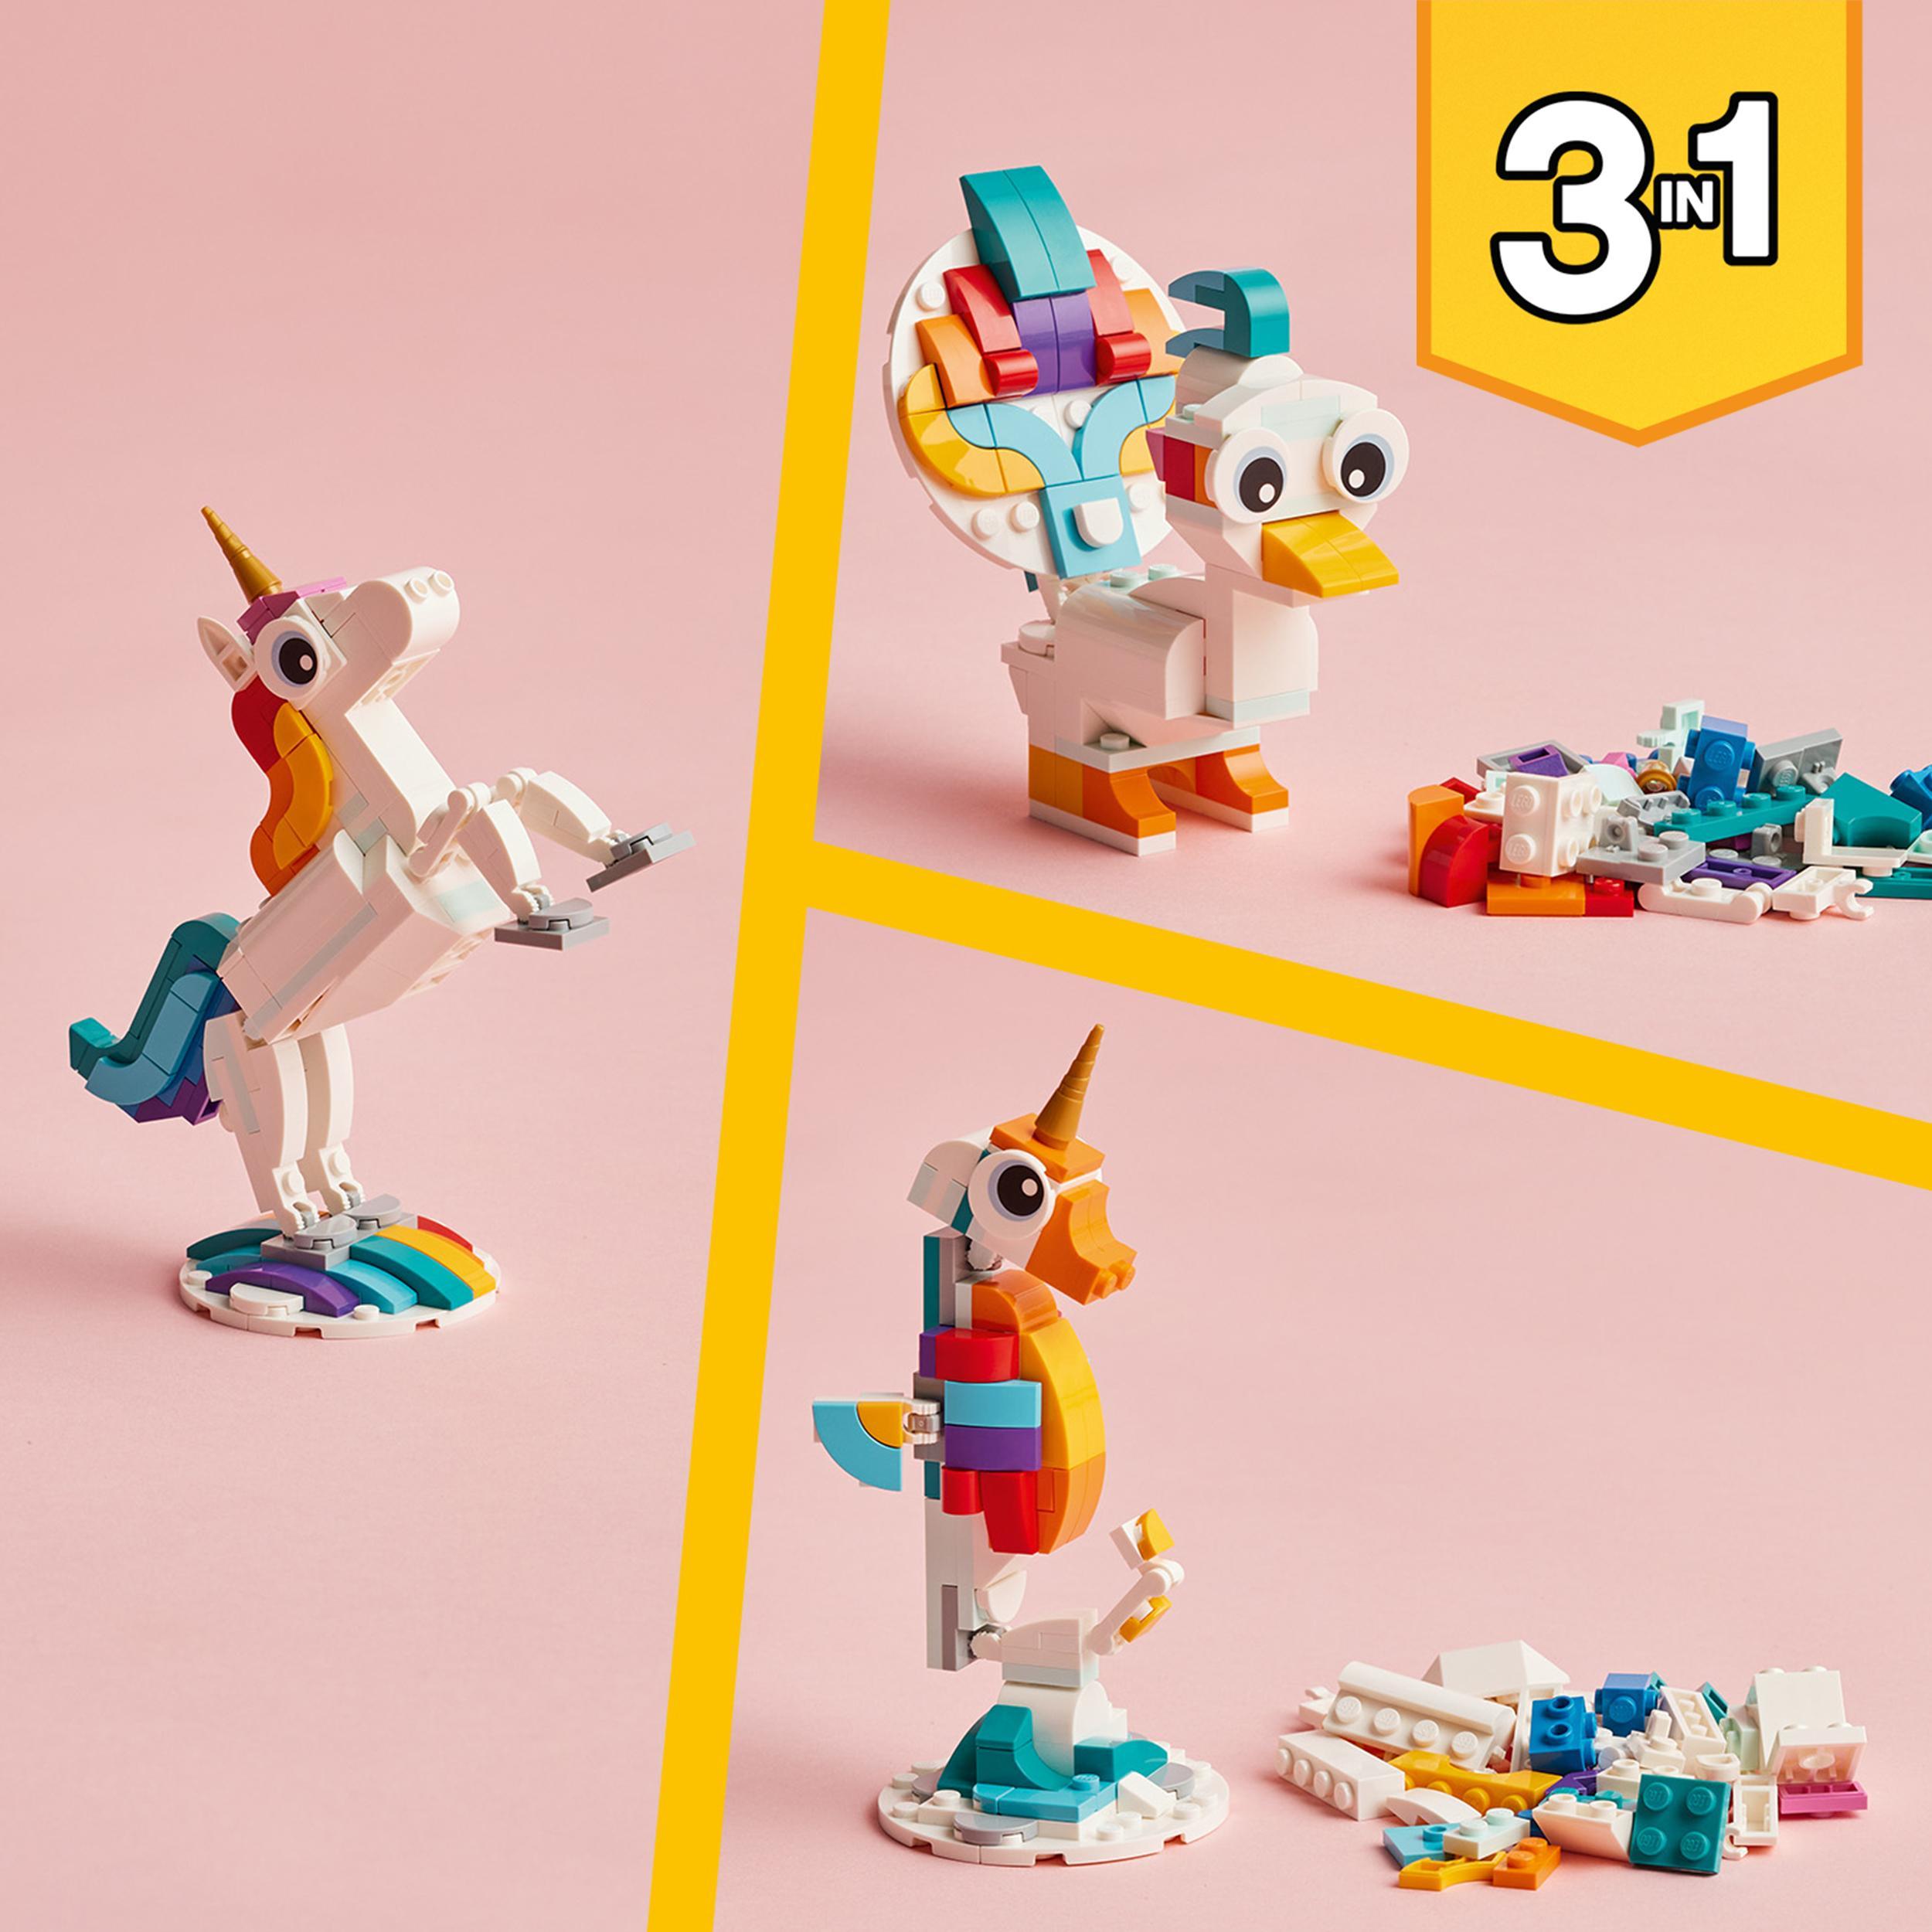 Lego creator 31140 unicorno magico con arcobaleno, set 3 in 1 con animali giocattolo fantastici, cavalluccio marino e pavone - LEGO CREATOR